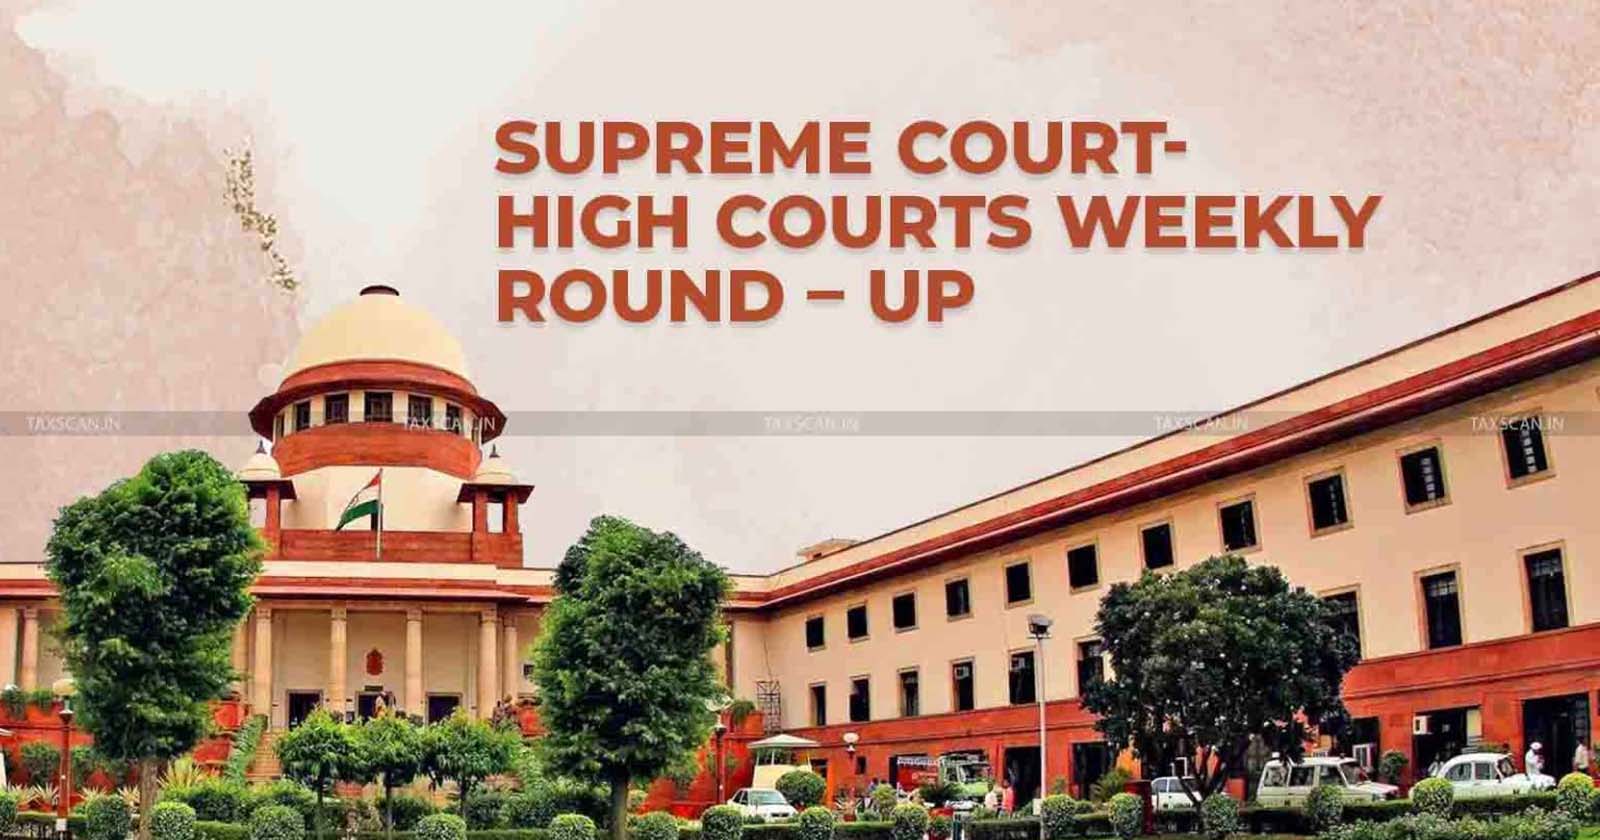 Supreme Court - Highcourt - Weekly Round-Up - taxscan